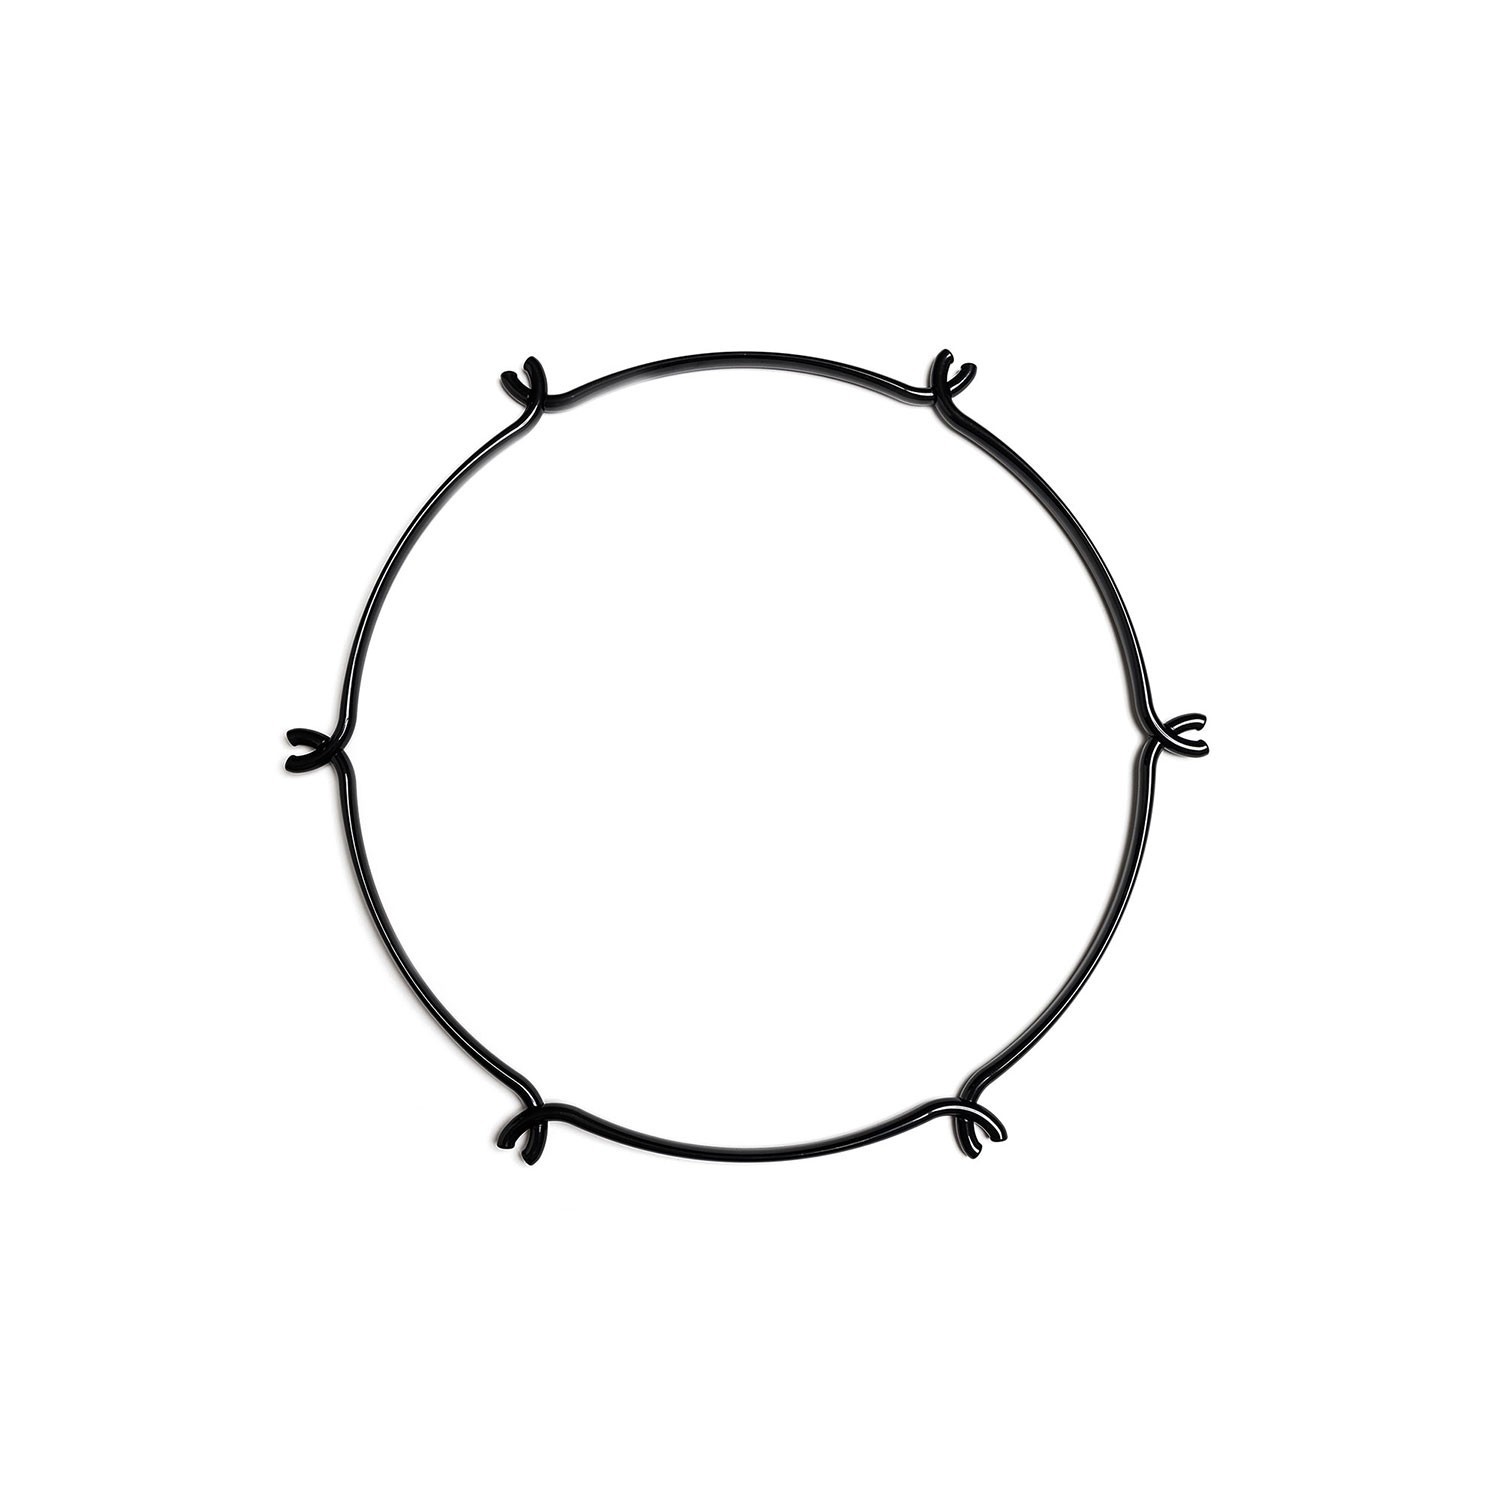 Cage Circular - Estructura para lámparas tipo araña